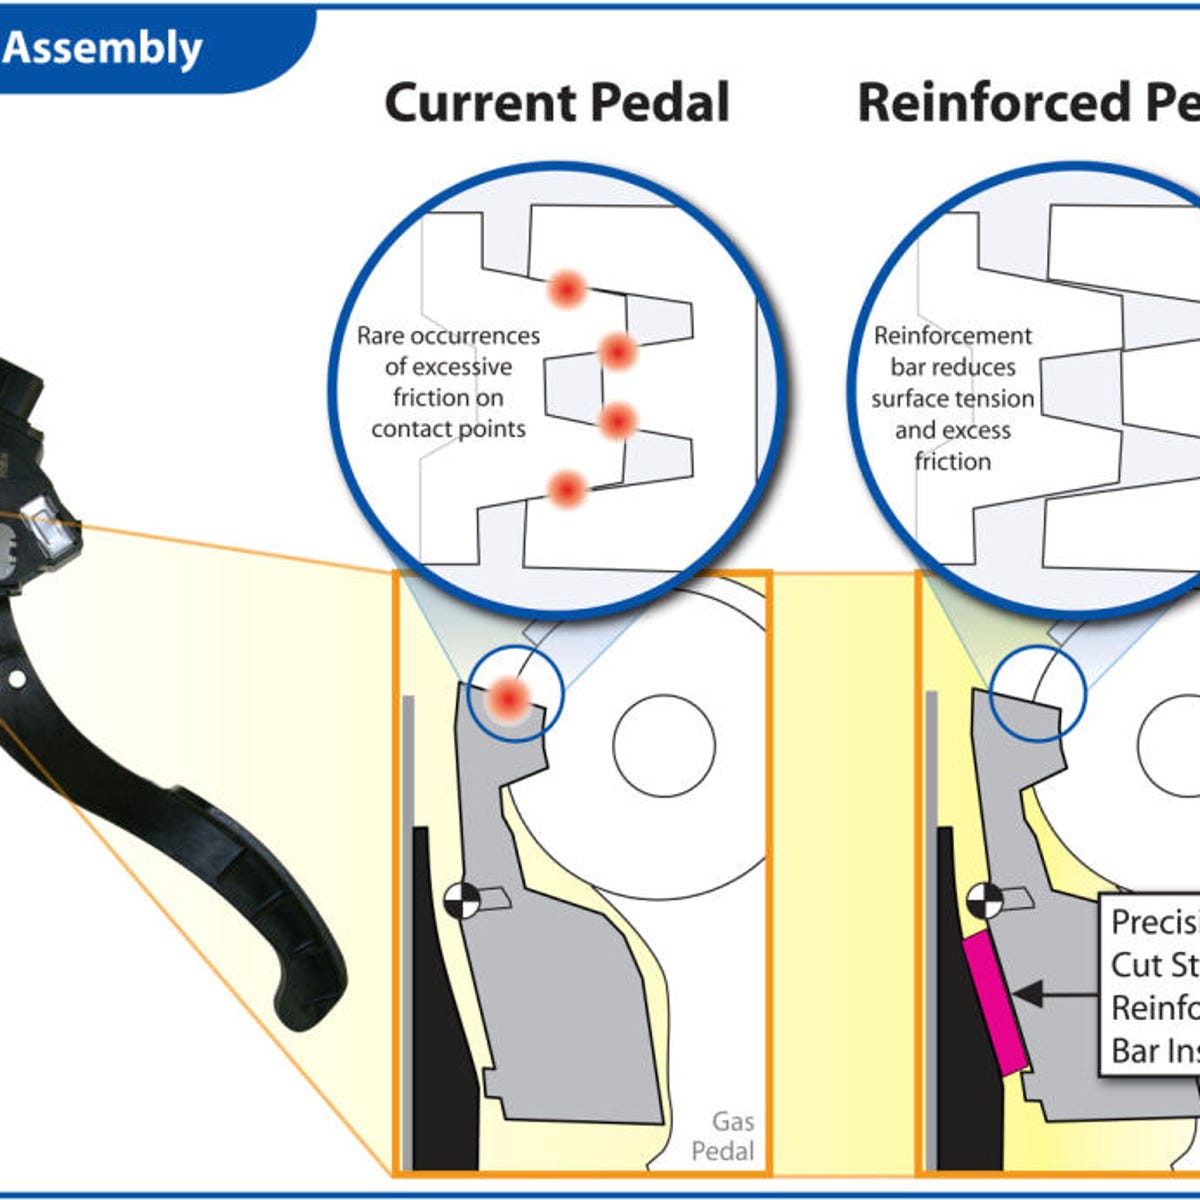 zuiverheid perspectief niet verwant Toyota recall: Engineers come up with pedal fix | ZDNET